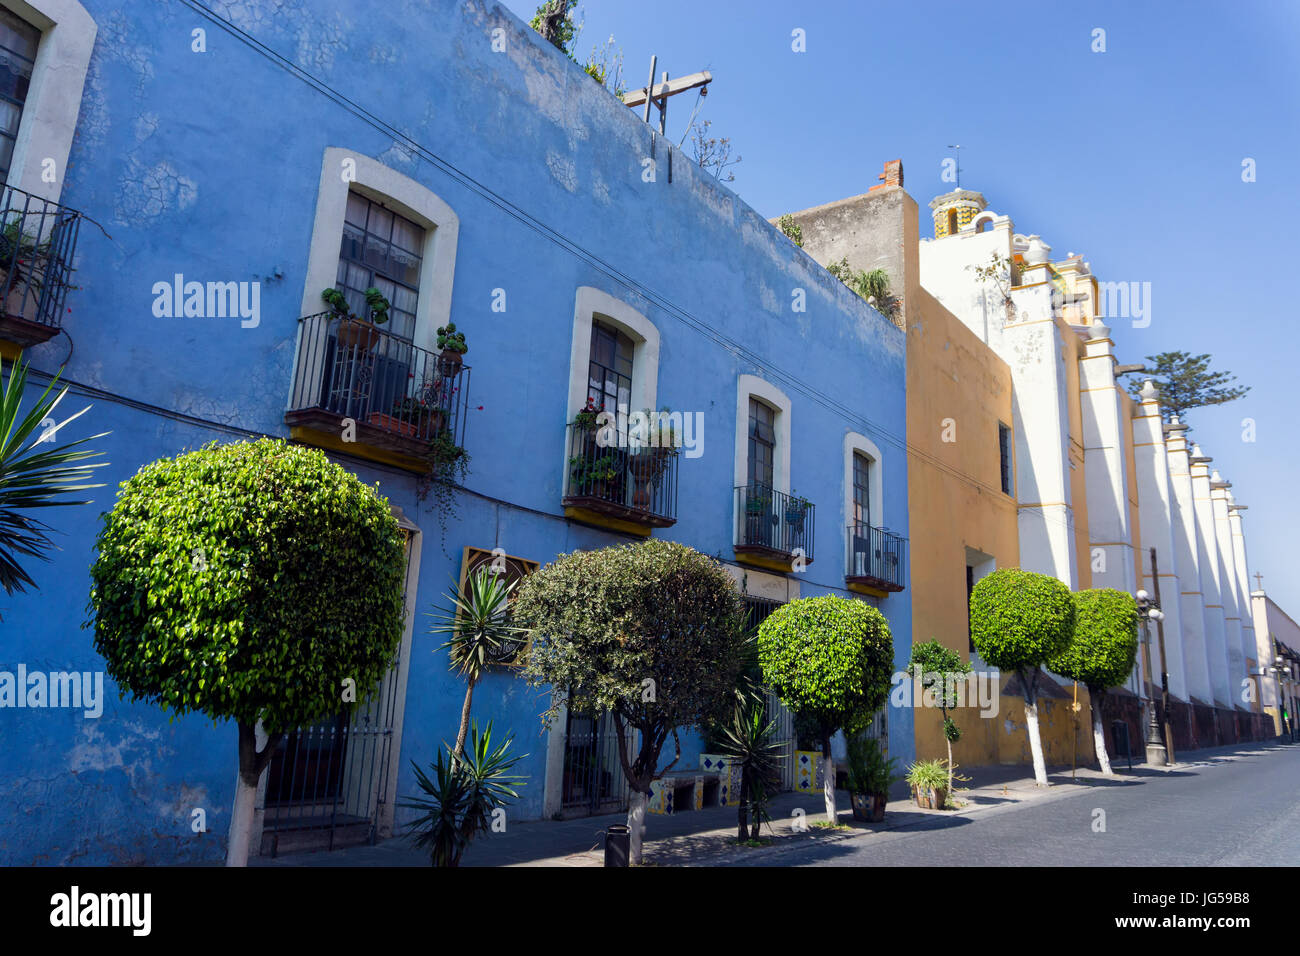 Les bâtiments coloniaux colorés à Puebla, Mexique Banque D'Images